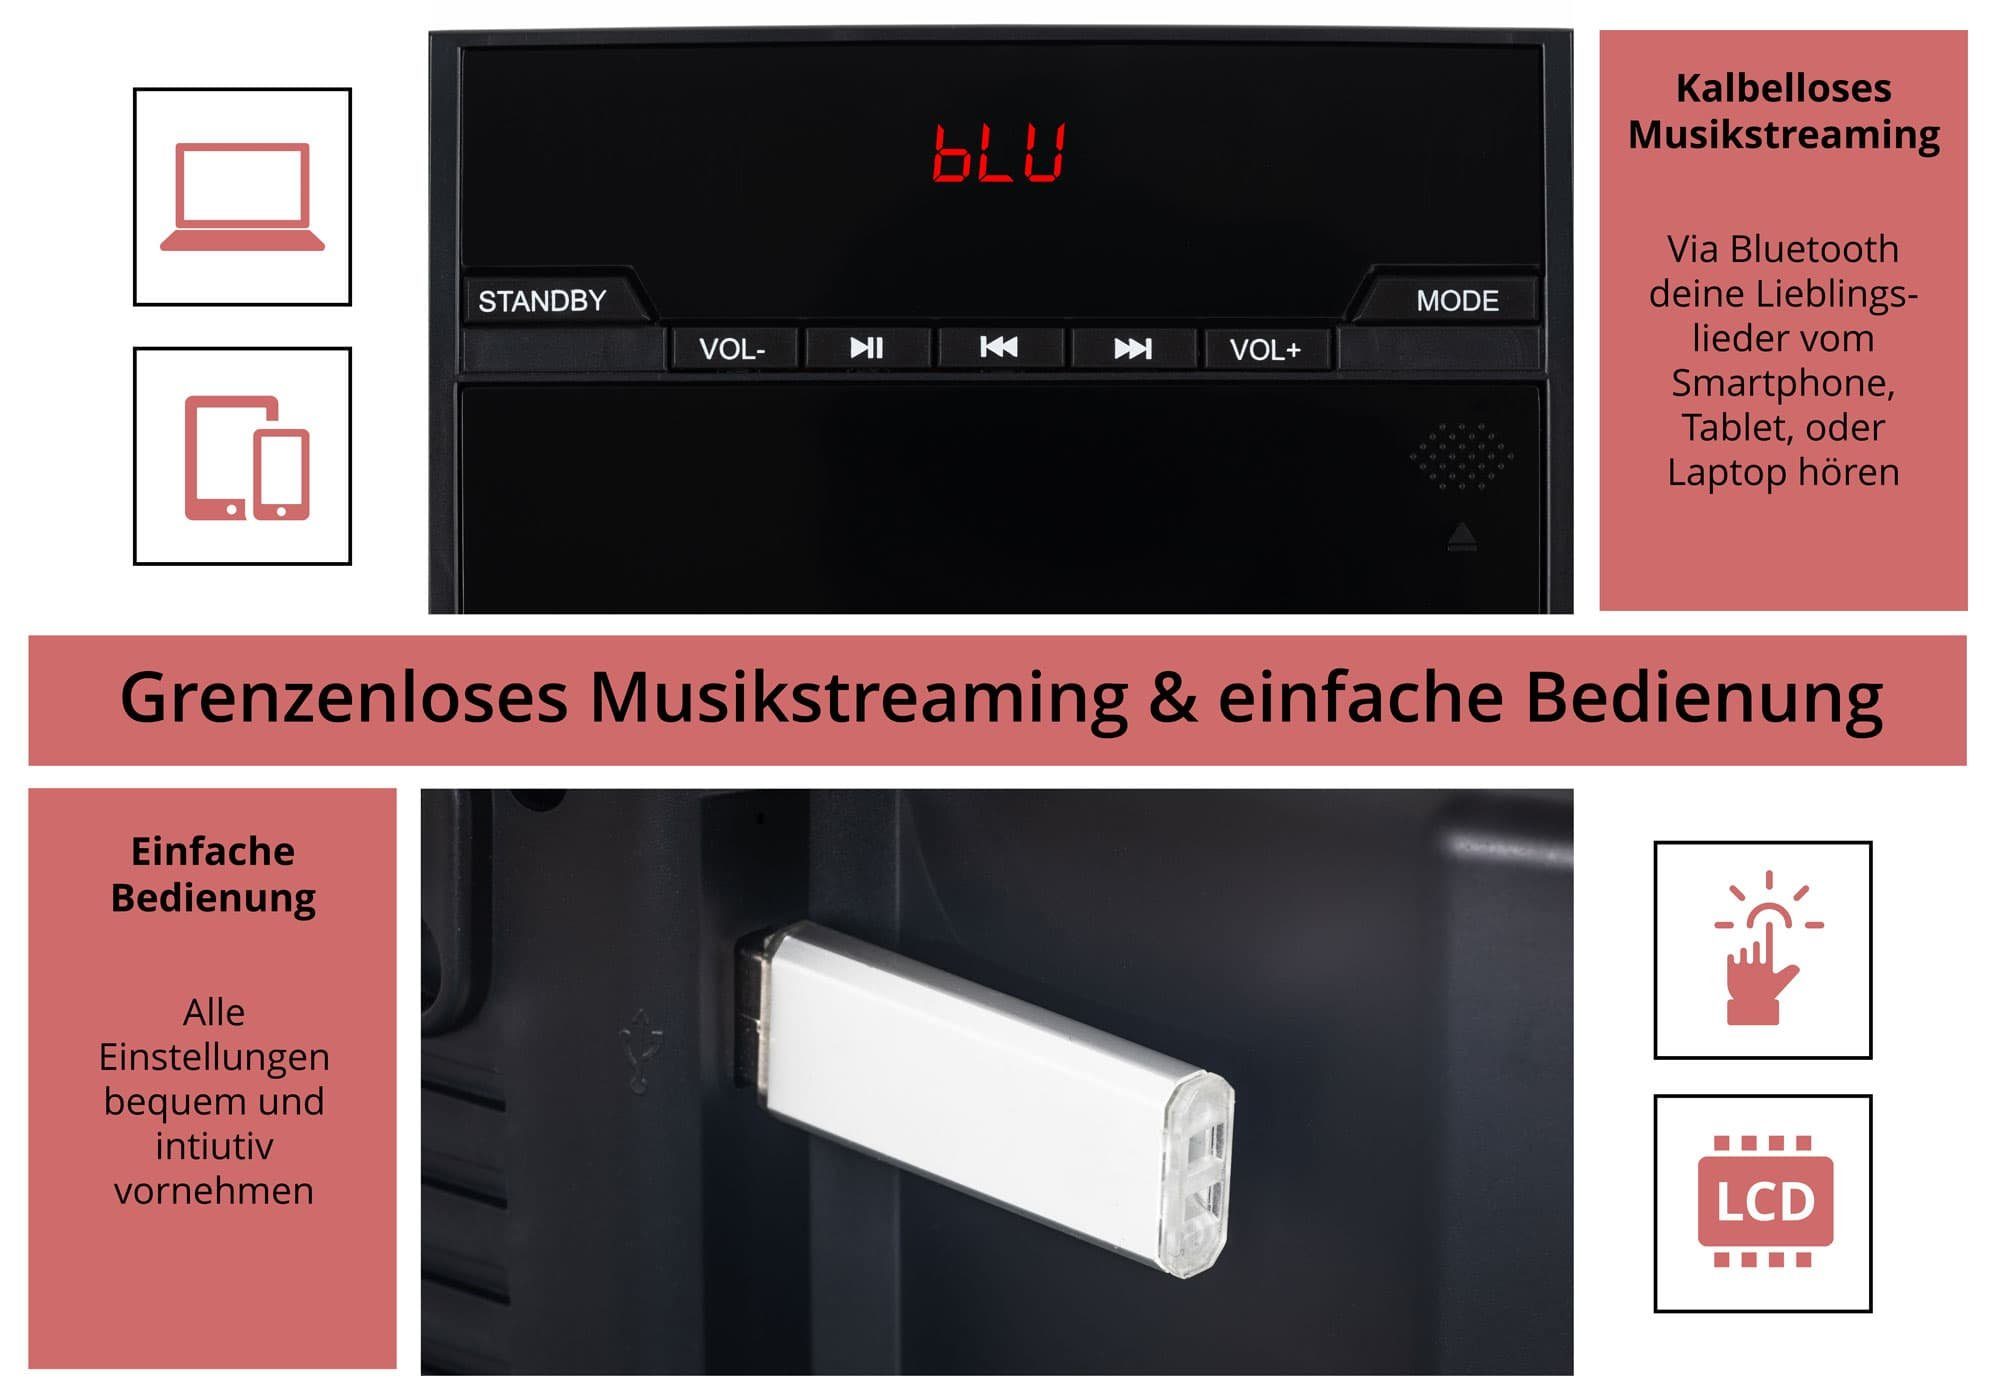 W, Stereoanlage Beatfoxx USB-Slot CD/MP3-Player, (UKW/MW-Radio, mit 6,00 MCD-60 und Vertikal Microanlage Bluetooth)